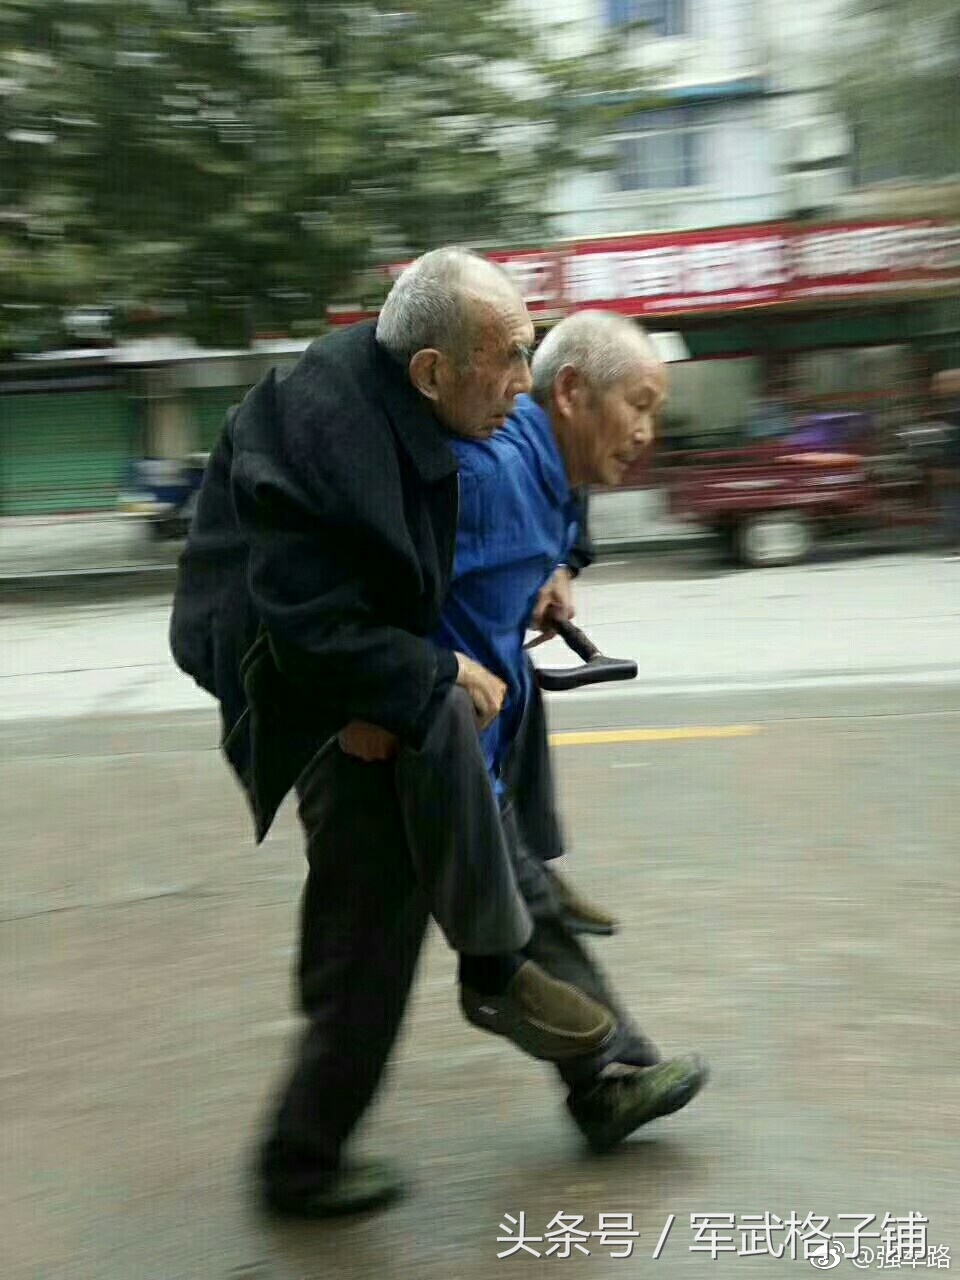 年迈老人如此照顾老父亲,让人感动